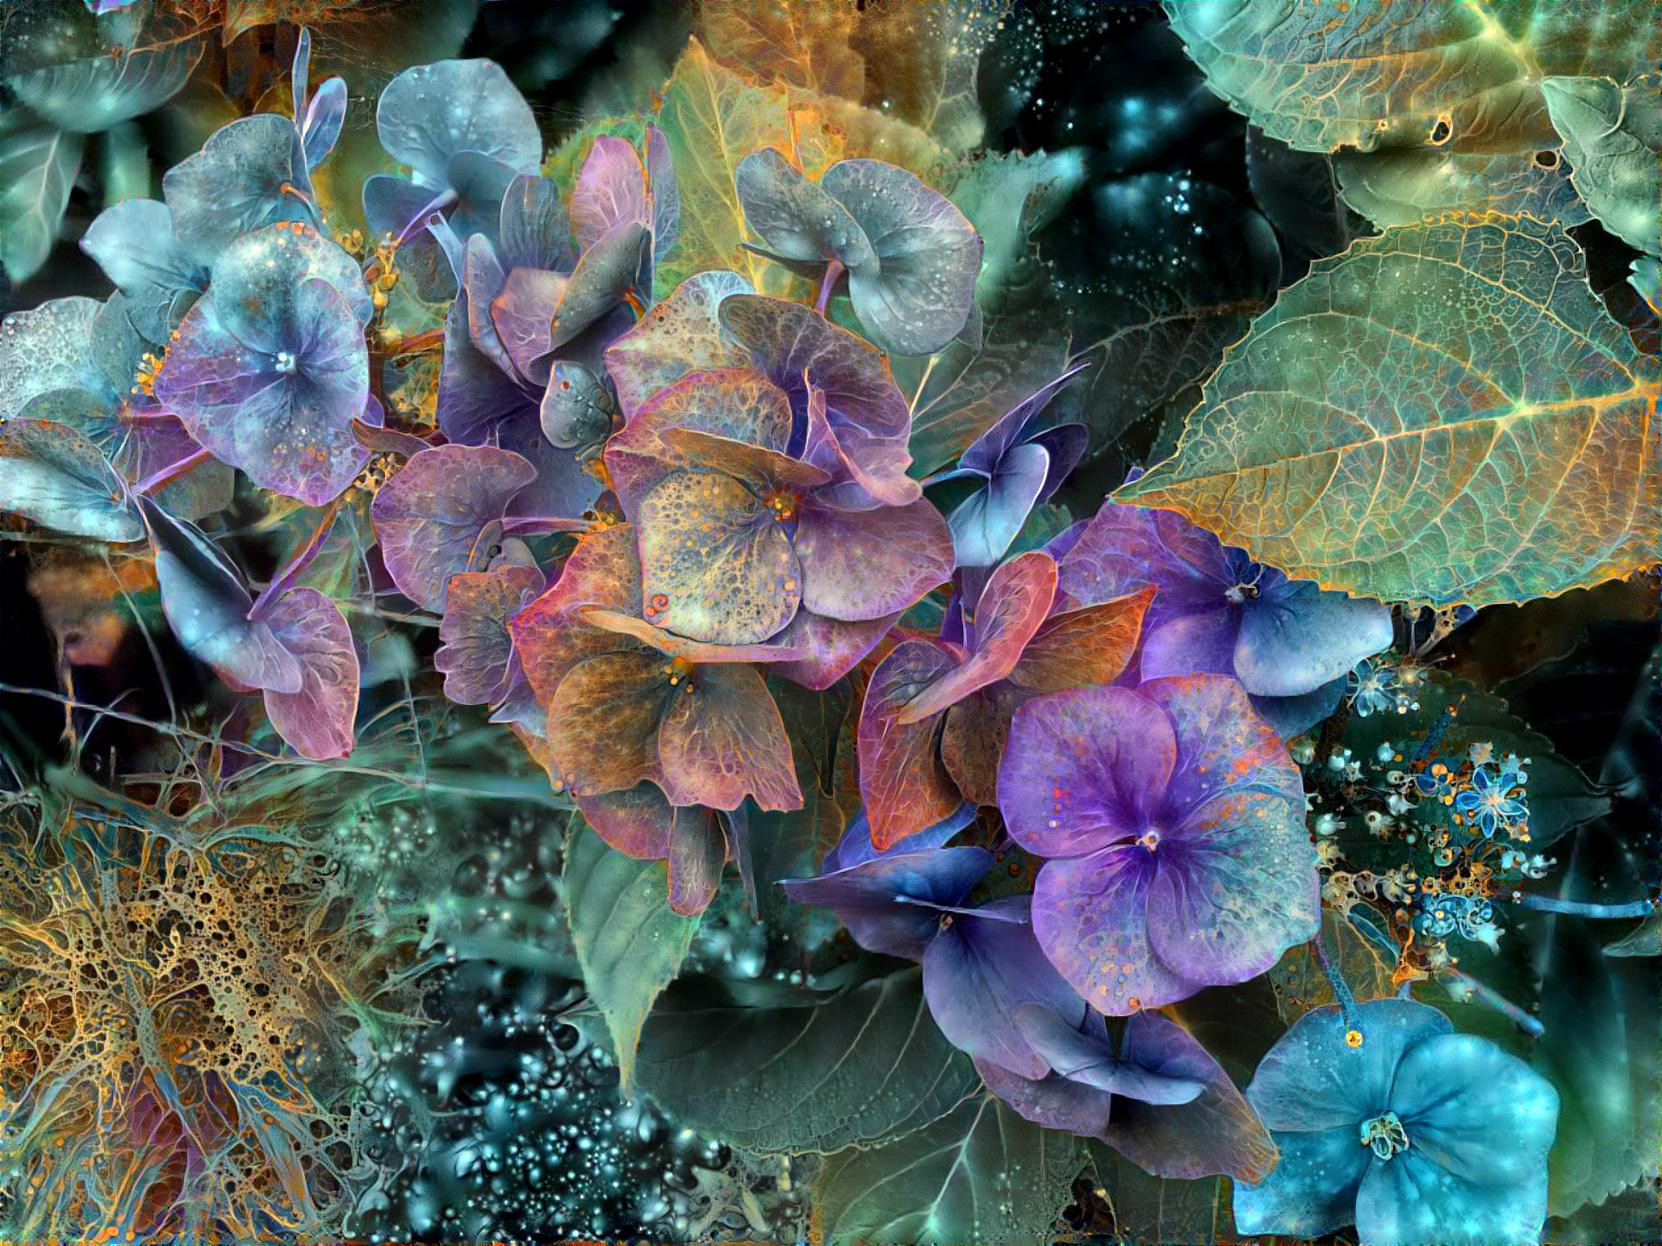 Lace Cap Hydrangea Blues Purples FHD